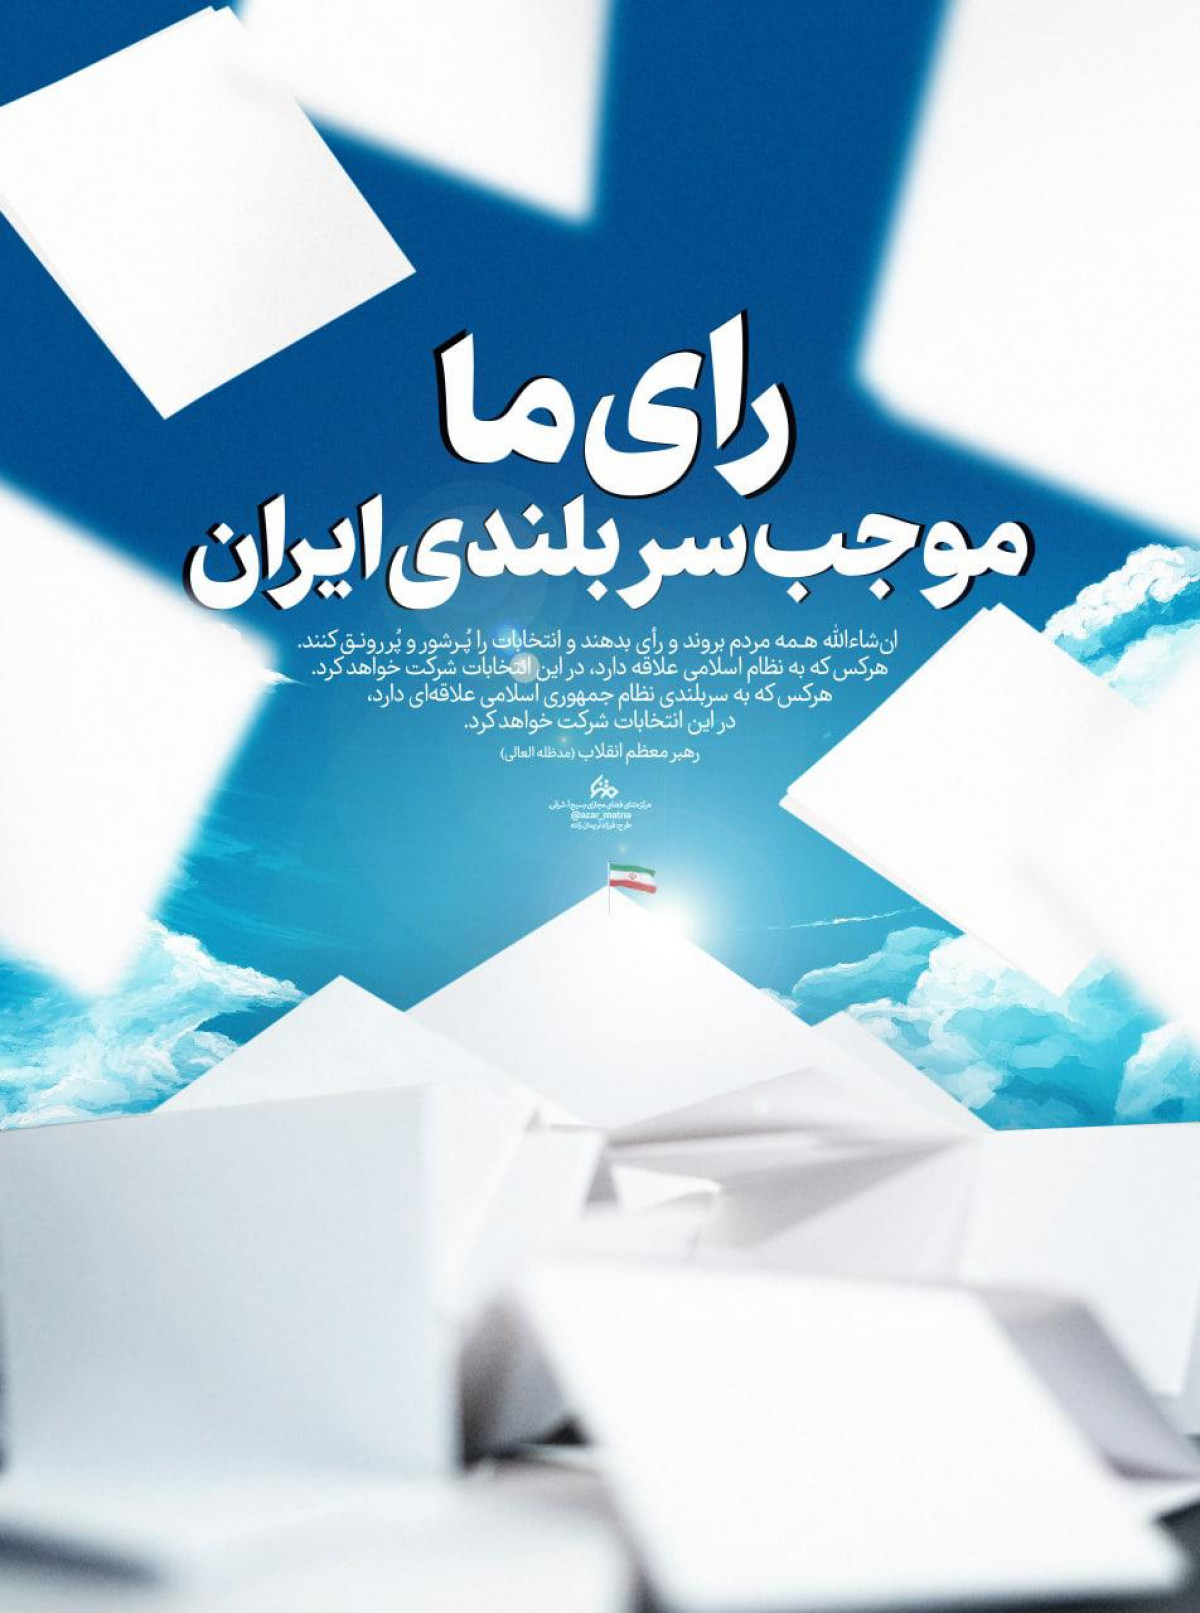 رای ما موجب سربلندی ایران